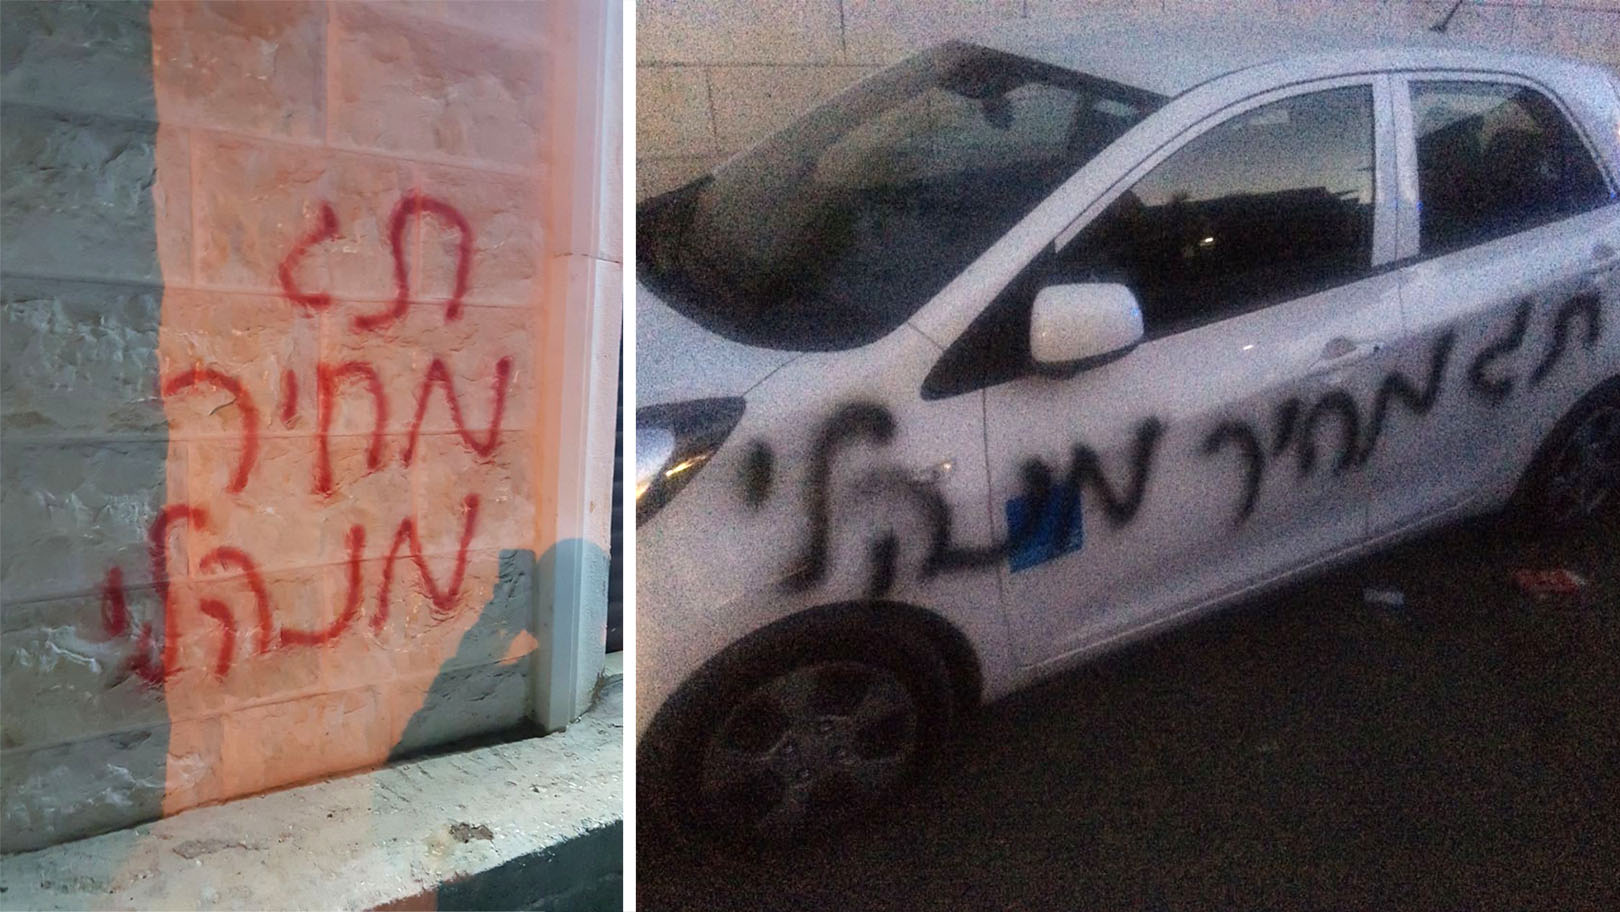 מימין: תג מחיר בירושלים ותג מחיר בכפר נאעורה (צילום: דוברות המשטרה)